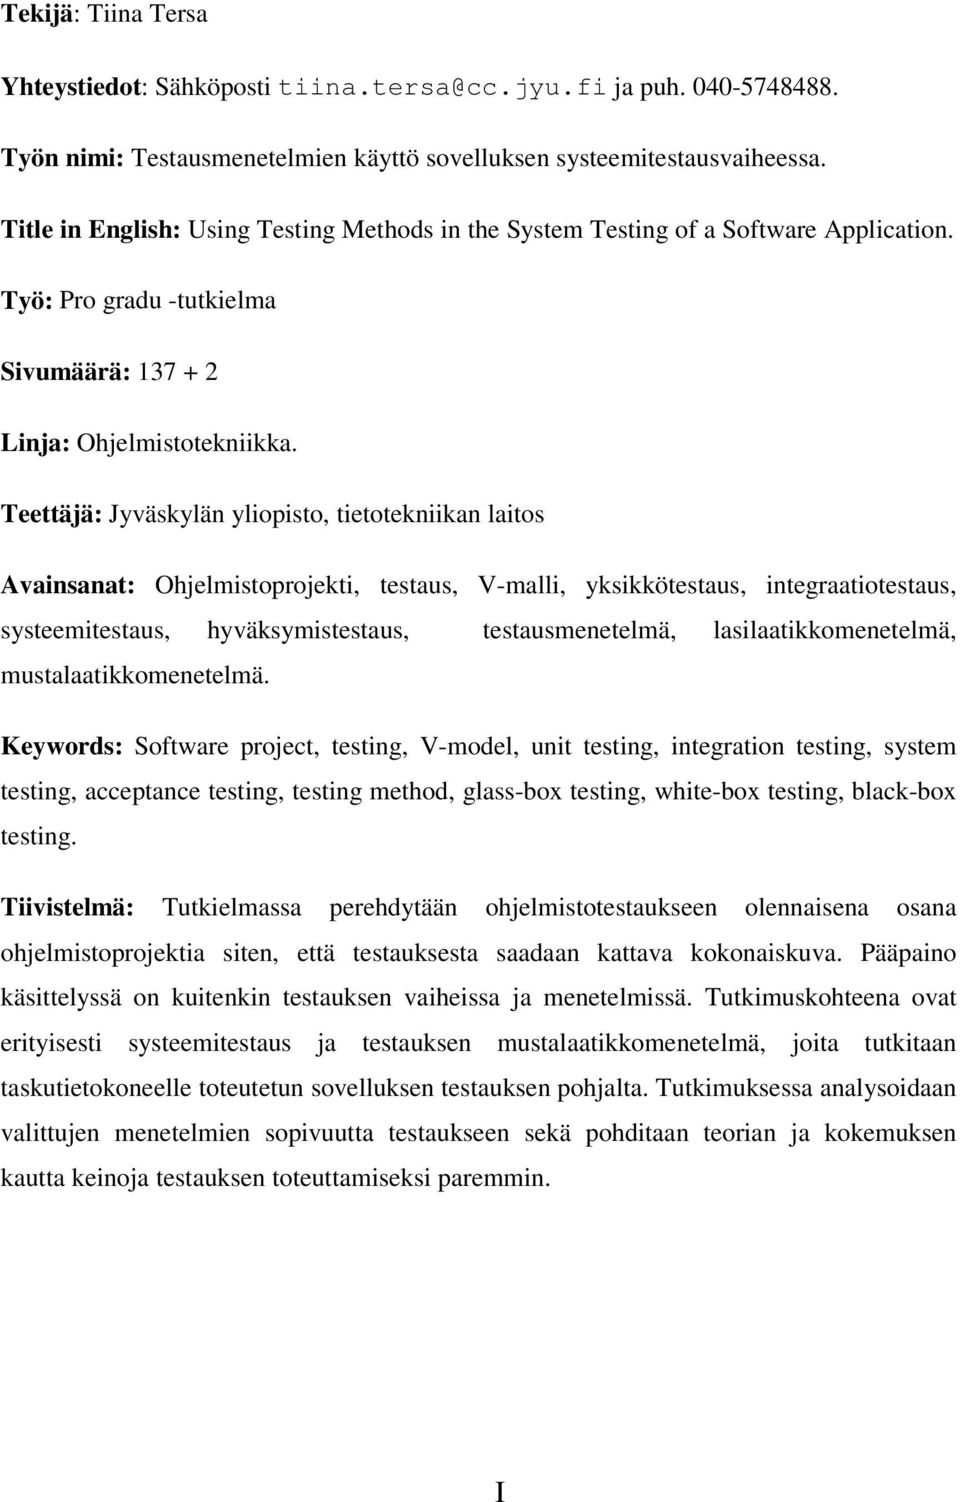 Teettäjä: Jyväskylän yliopisto, tietotekniikan laitos Avainsanat: Ohjelmistoprojekti, testaus, V-malli, yksikkötestaus, integraatiotestaus, systeemitestaus, hyväksymistestaus, testausmenetelmä,